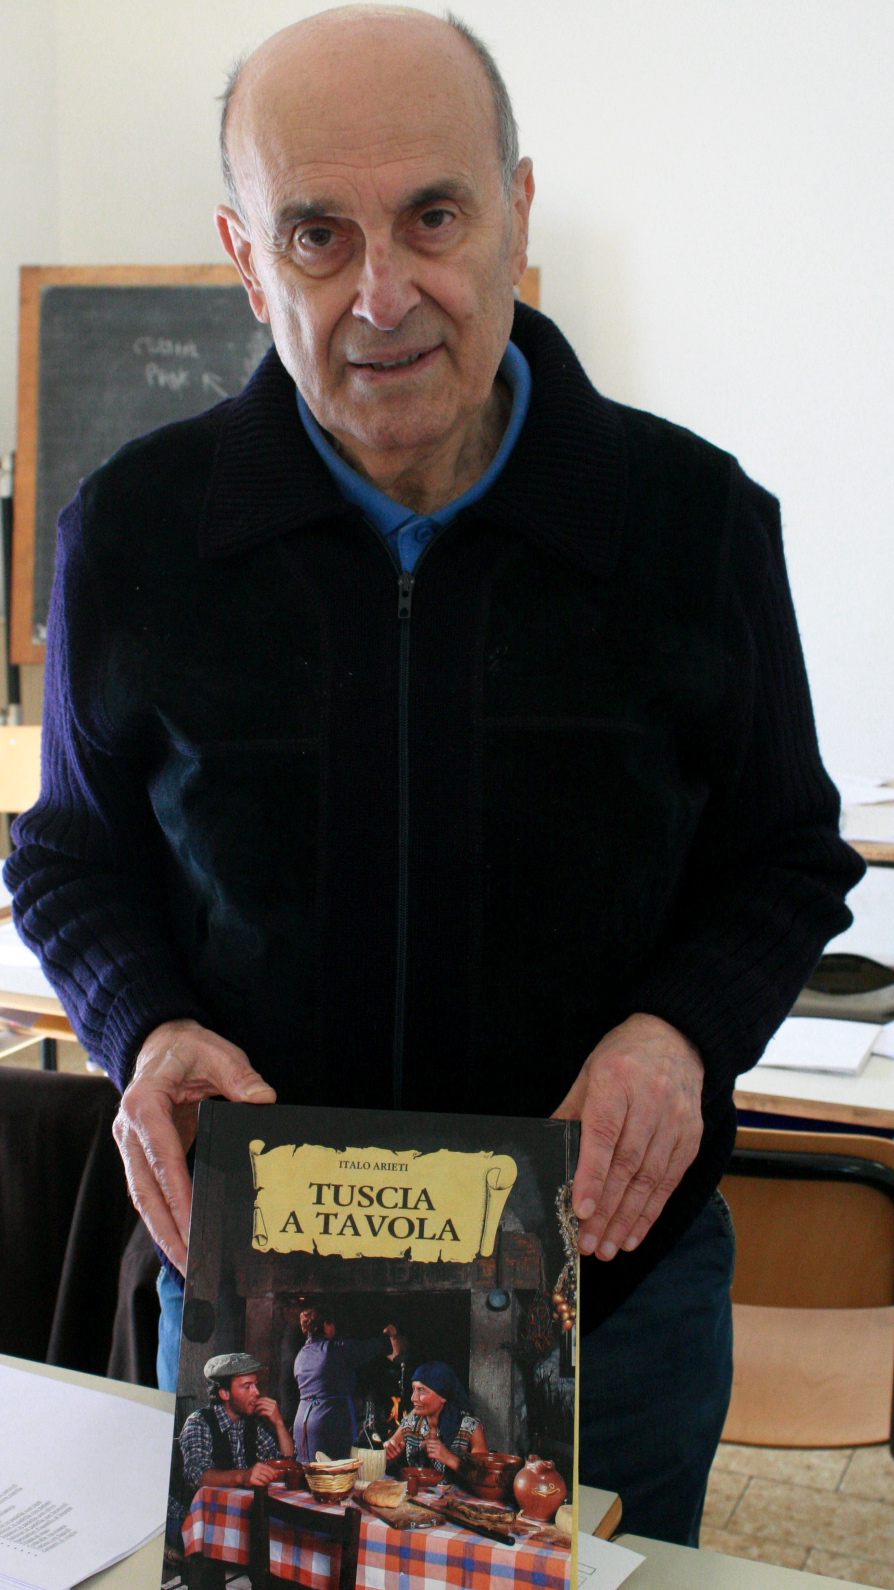 Italo Arieti con la sua pubblicazione "Tuscia a Tavola".